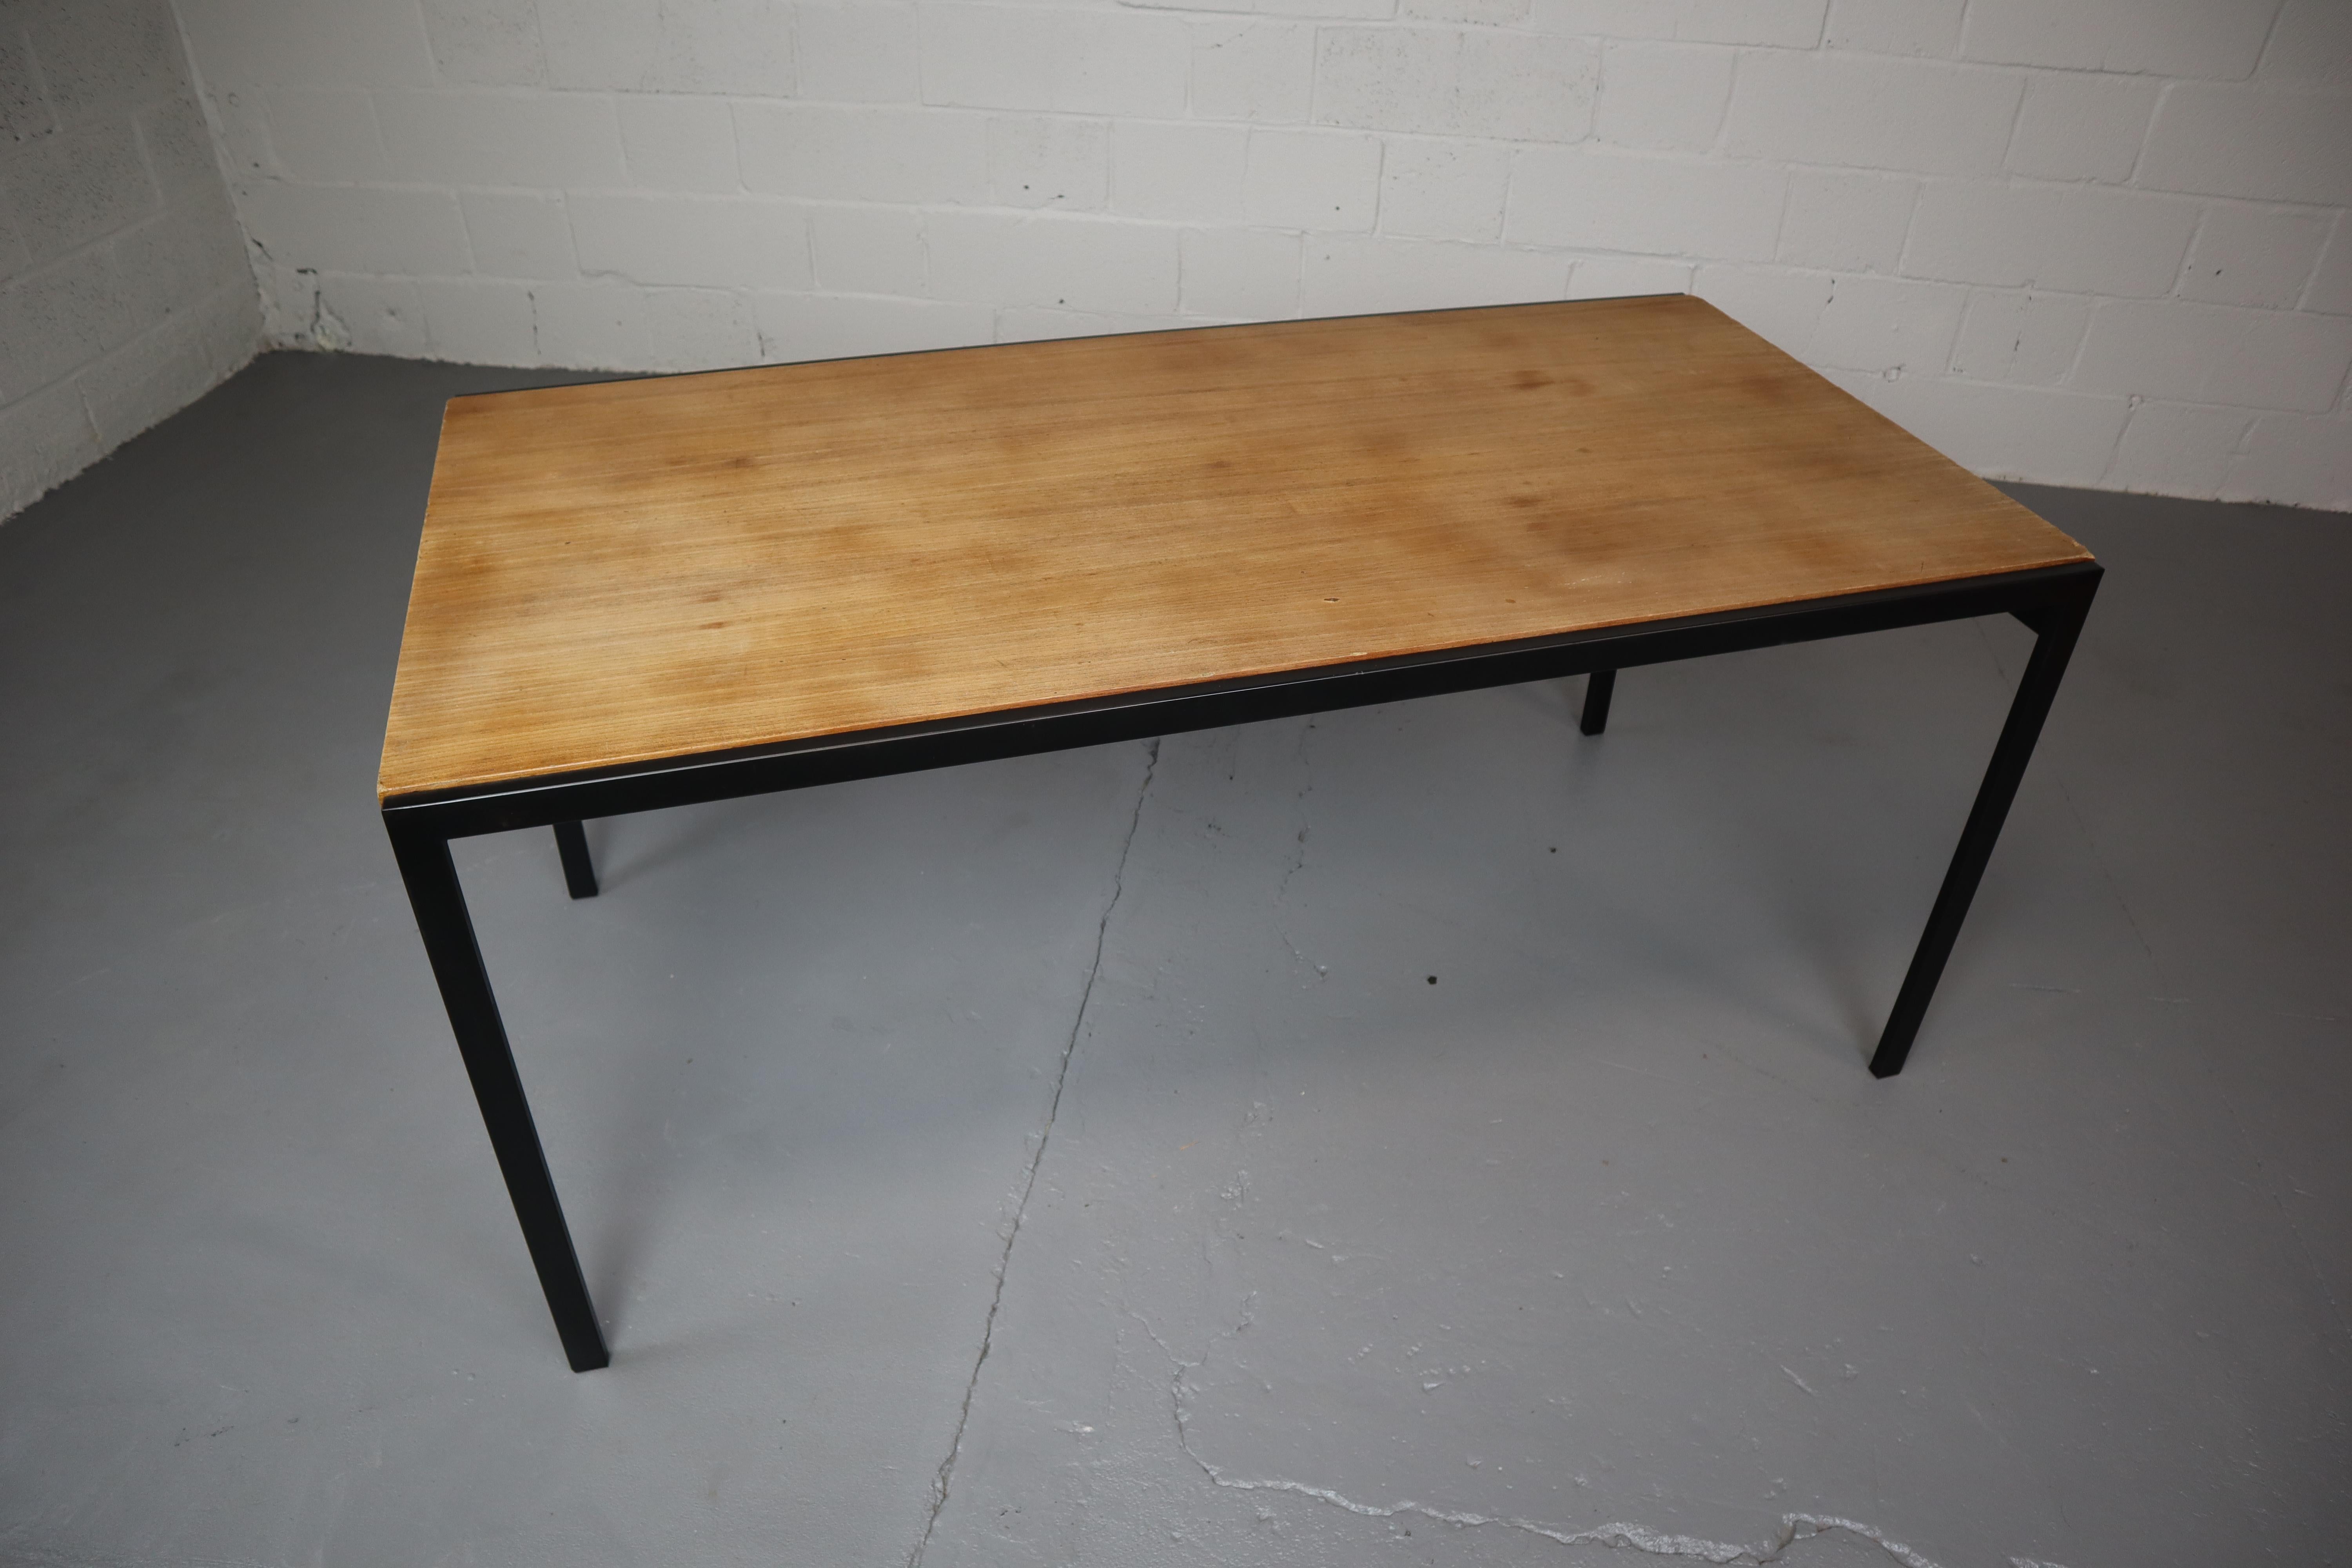 Table à manger design vintage néerlandais du début des années soixante. La table, TU30, a été conçue par Cees Braakman dans le cadre de la série japonaise qu'il a dessinée pour les meubles Pastoe. Design minimaliste avec une structure en métal noir